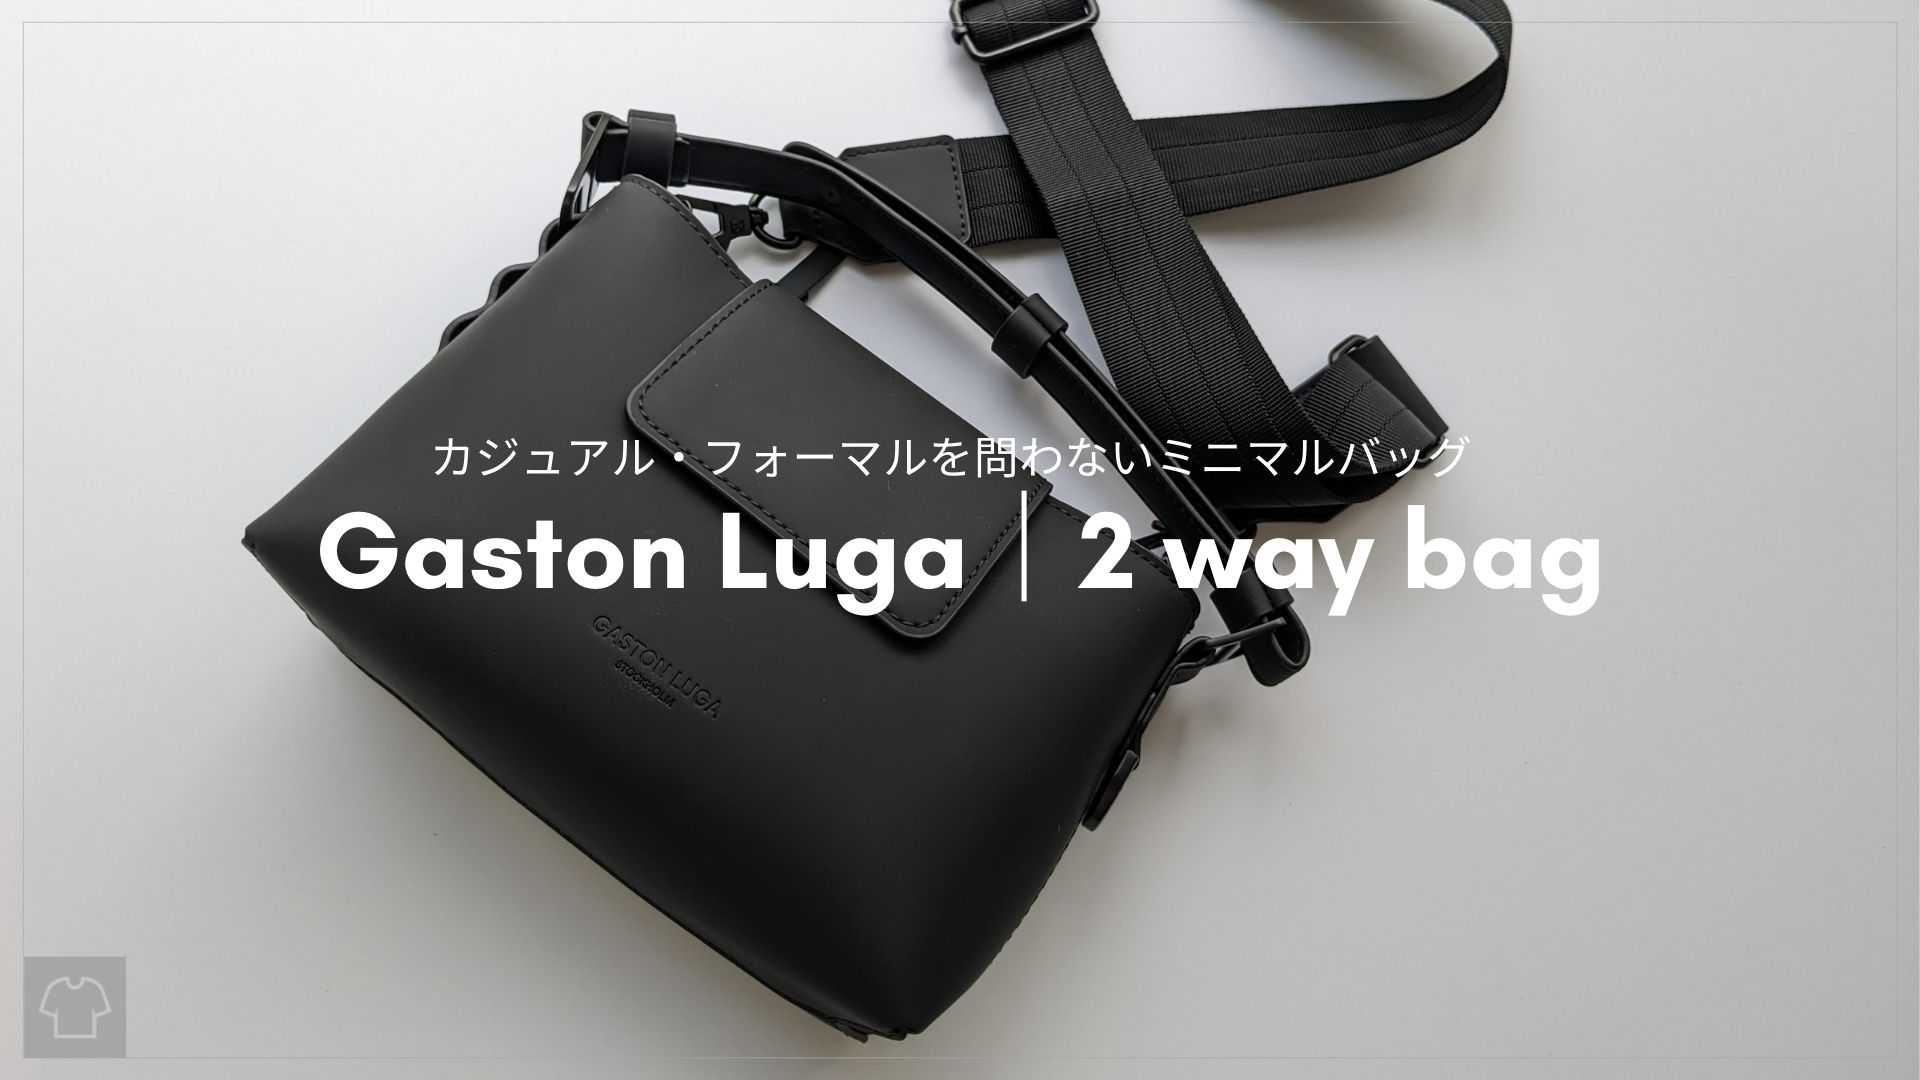 「【レビュー】ミニマリストのミニバッグ〝ガストンルーガ〟2 way bagが愛おしい」のアイキャッチ画像